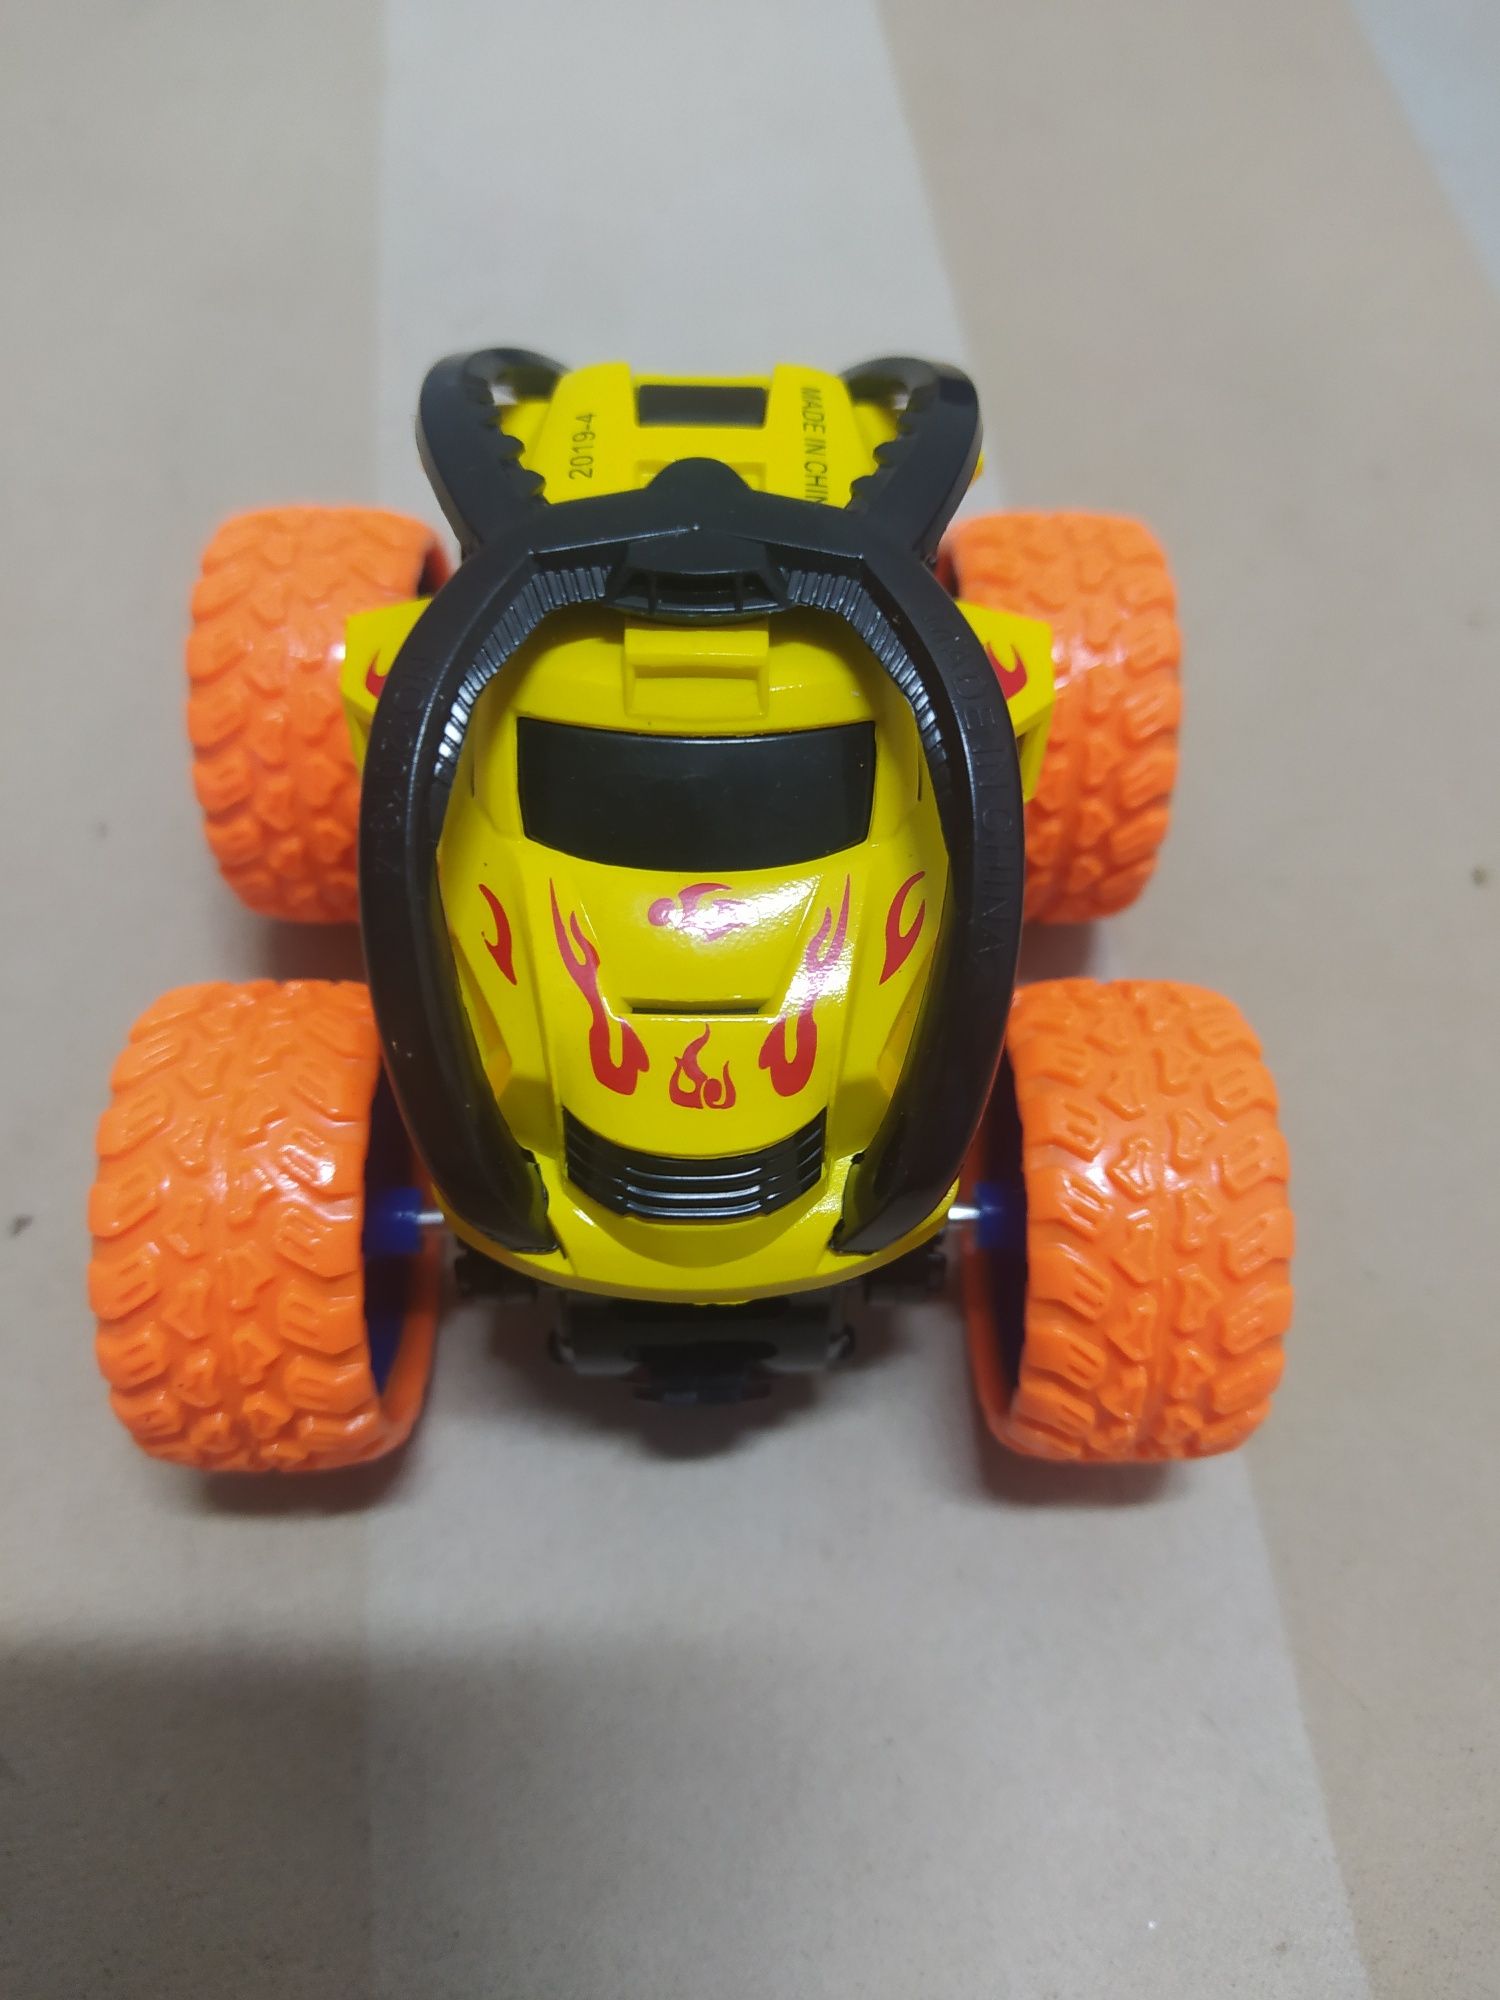 Samochód pomarańczowo/zolty